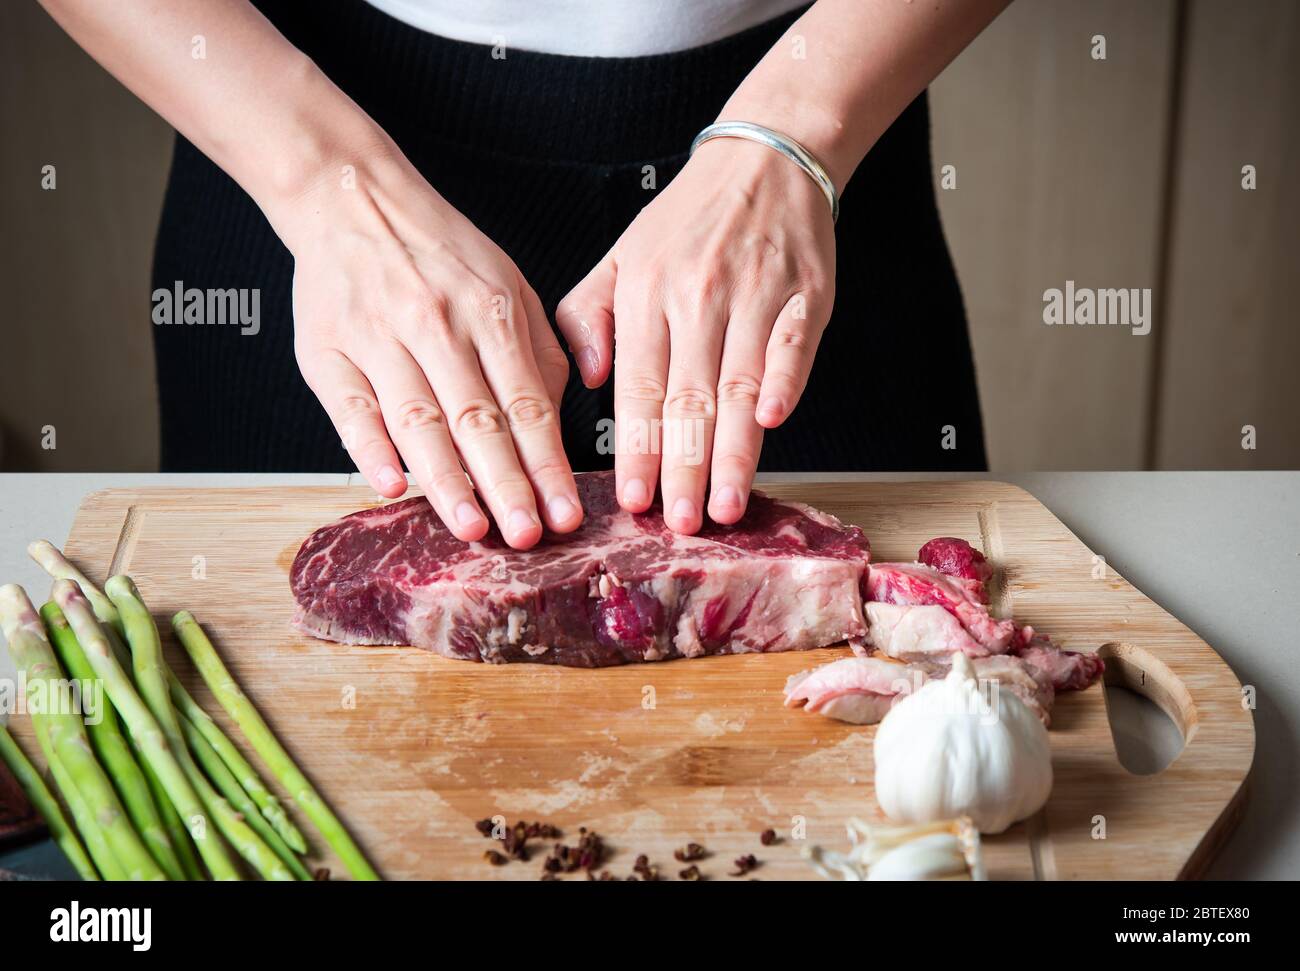 Frau bereitet Wagyu japanisches Rindfleisch Steak in der Küche. Hausmannskost und Zubereitung von Speisen Stockfoto